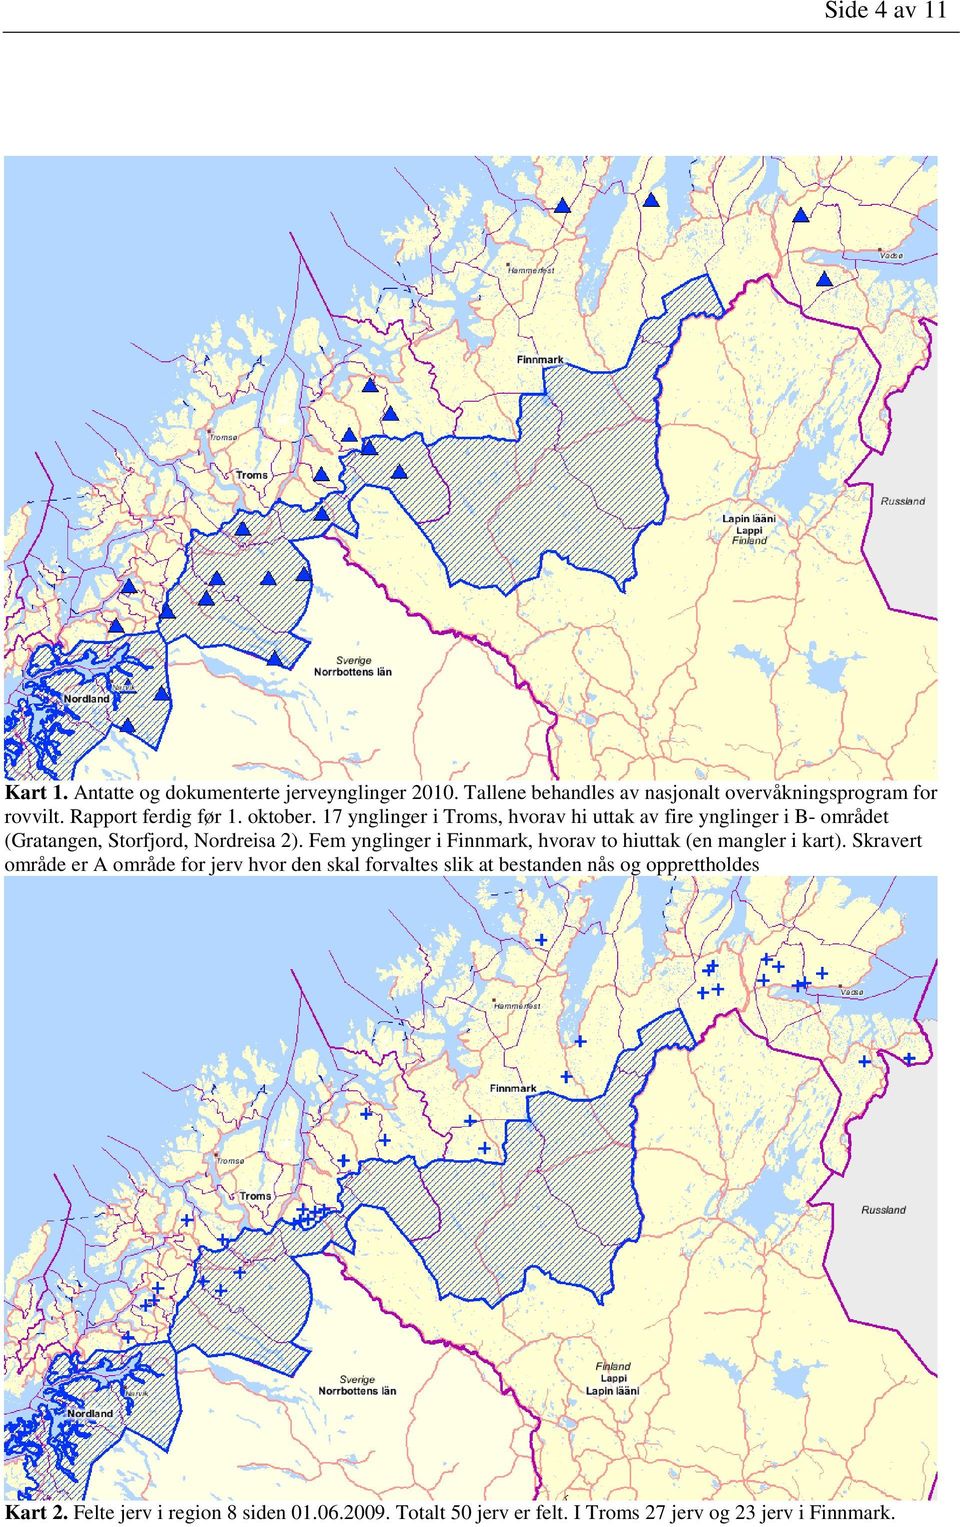 17 ynglinger i Troms, hvorav hi uttak av fire ynglinger i B- området (Gratangen, Storfjord, Nordreisa 2).